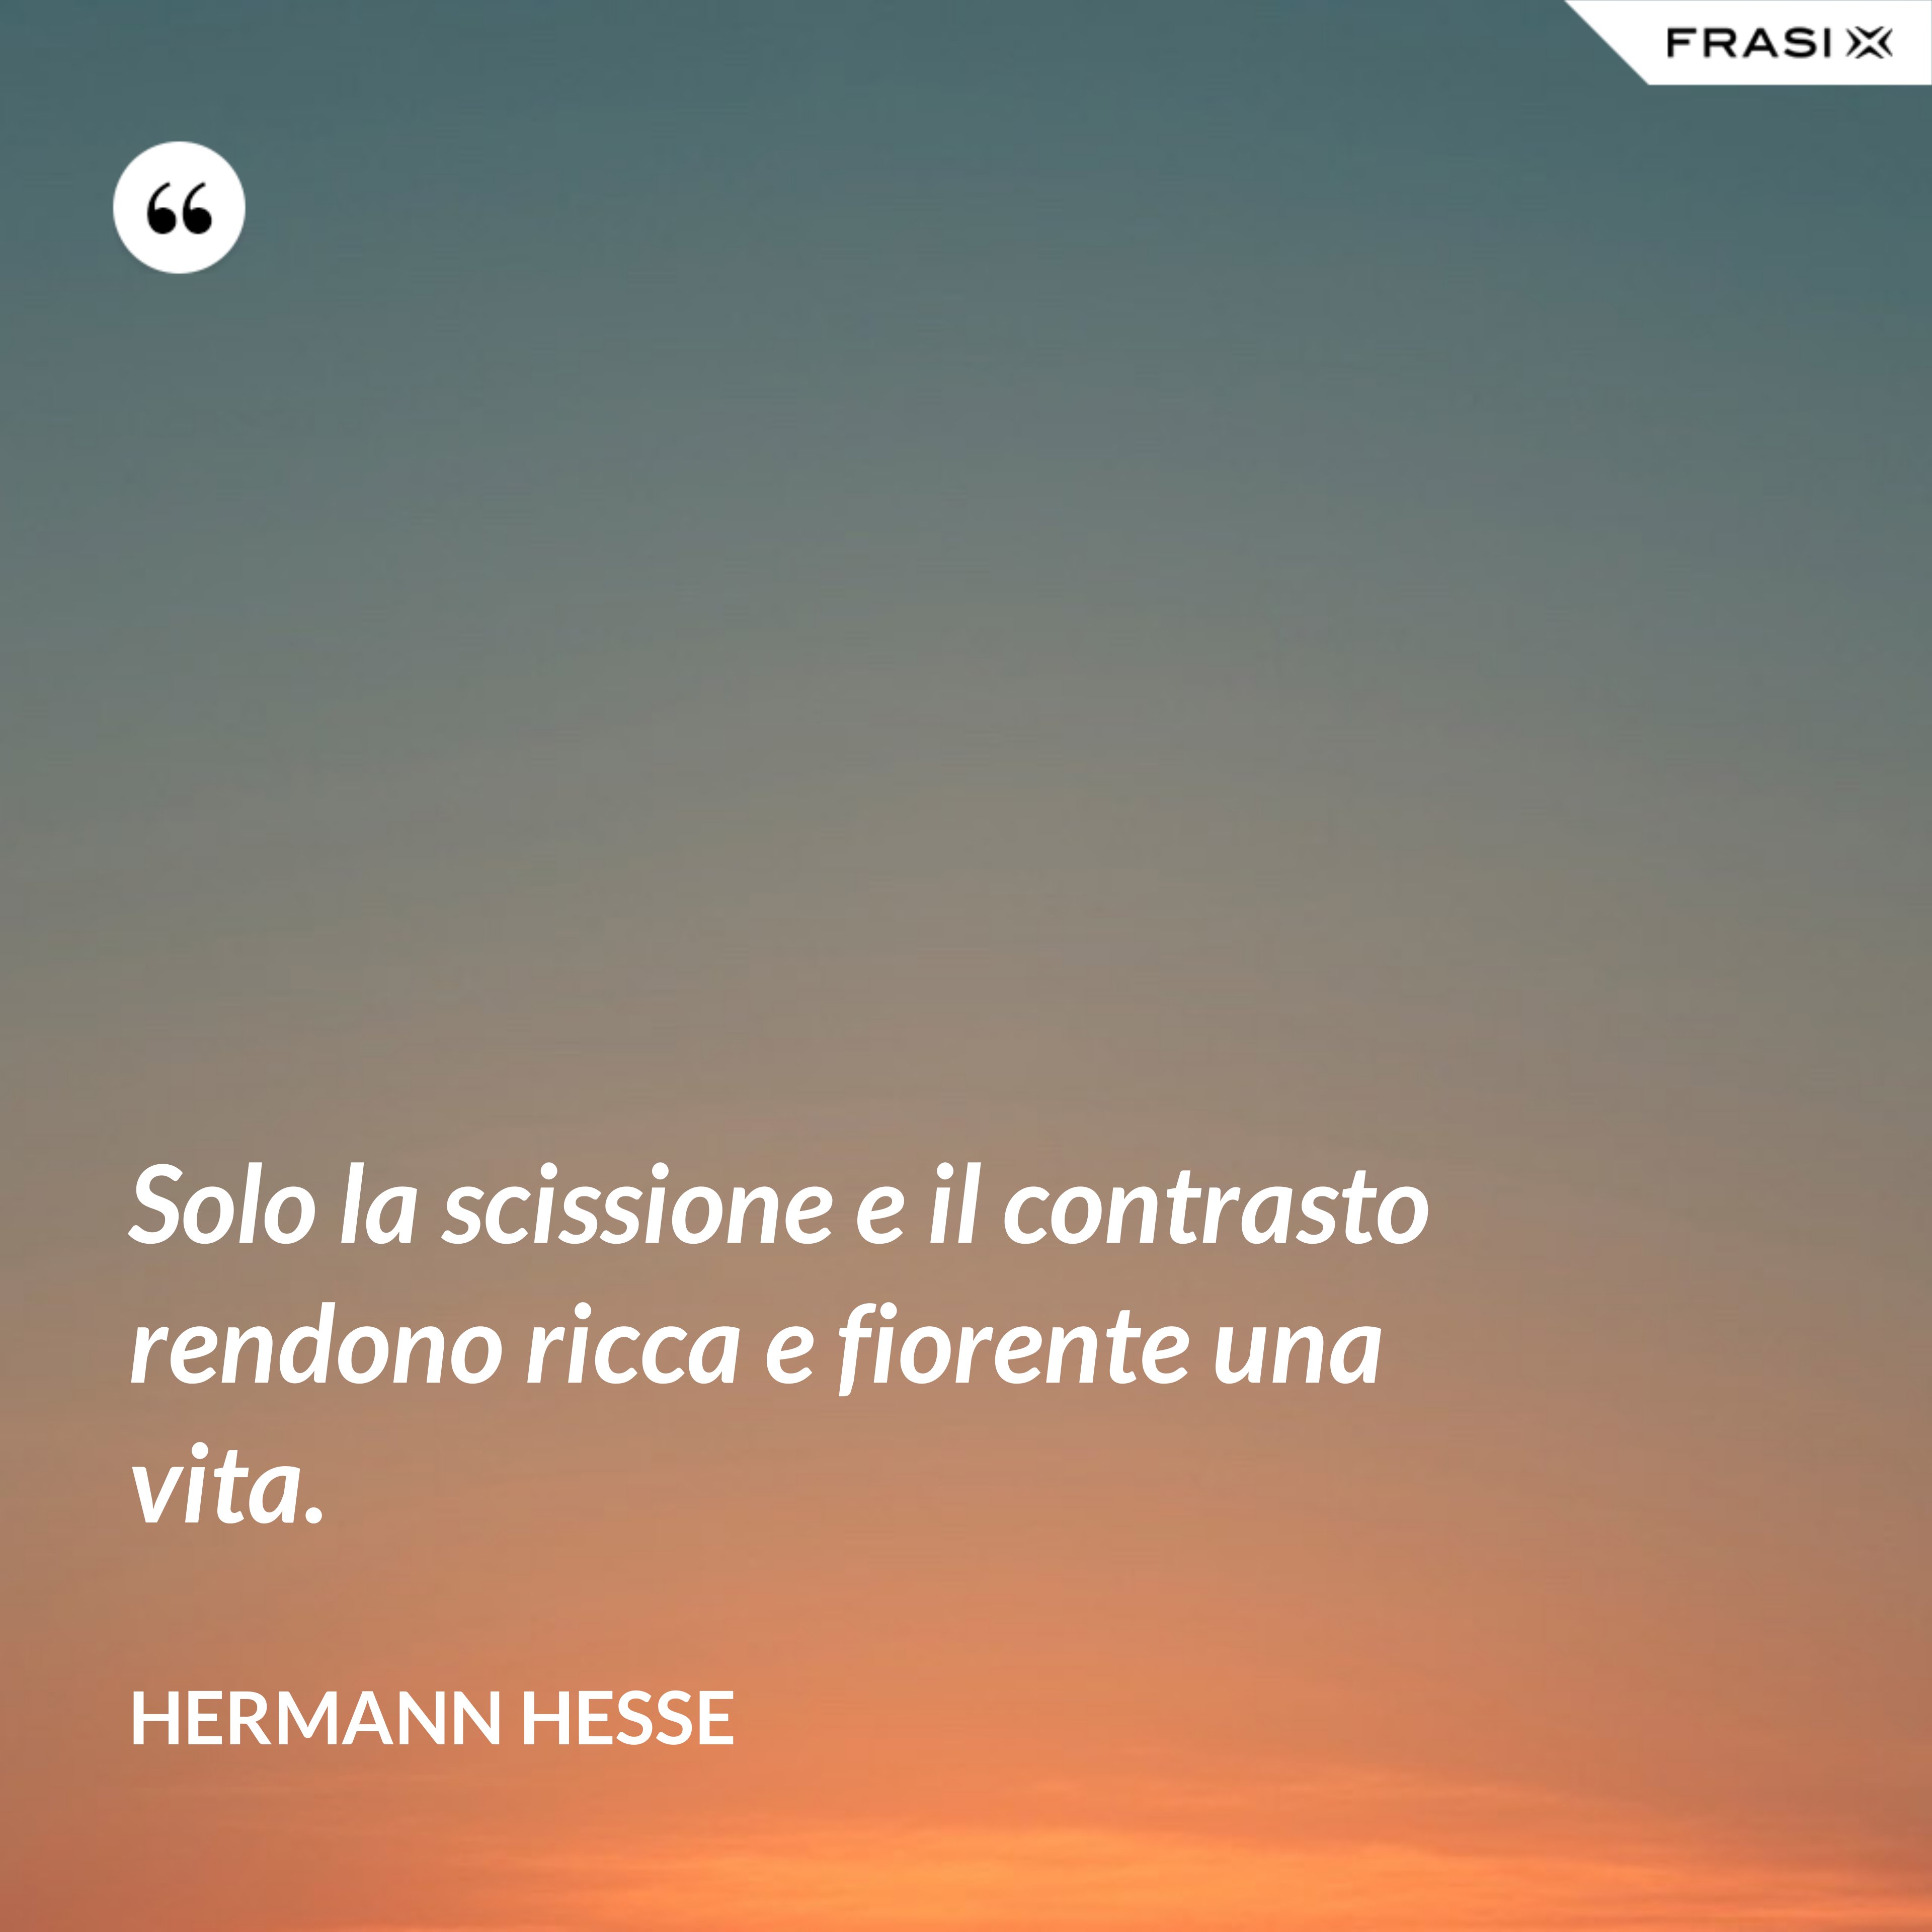 Solo la scissione e il contrasto rendono ricca e fiorente una vita. - Hermann Hesse